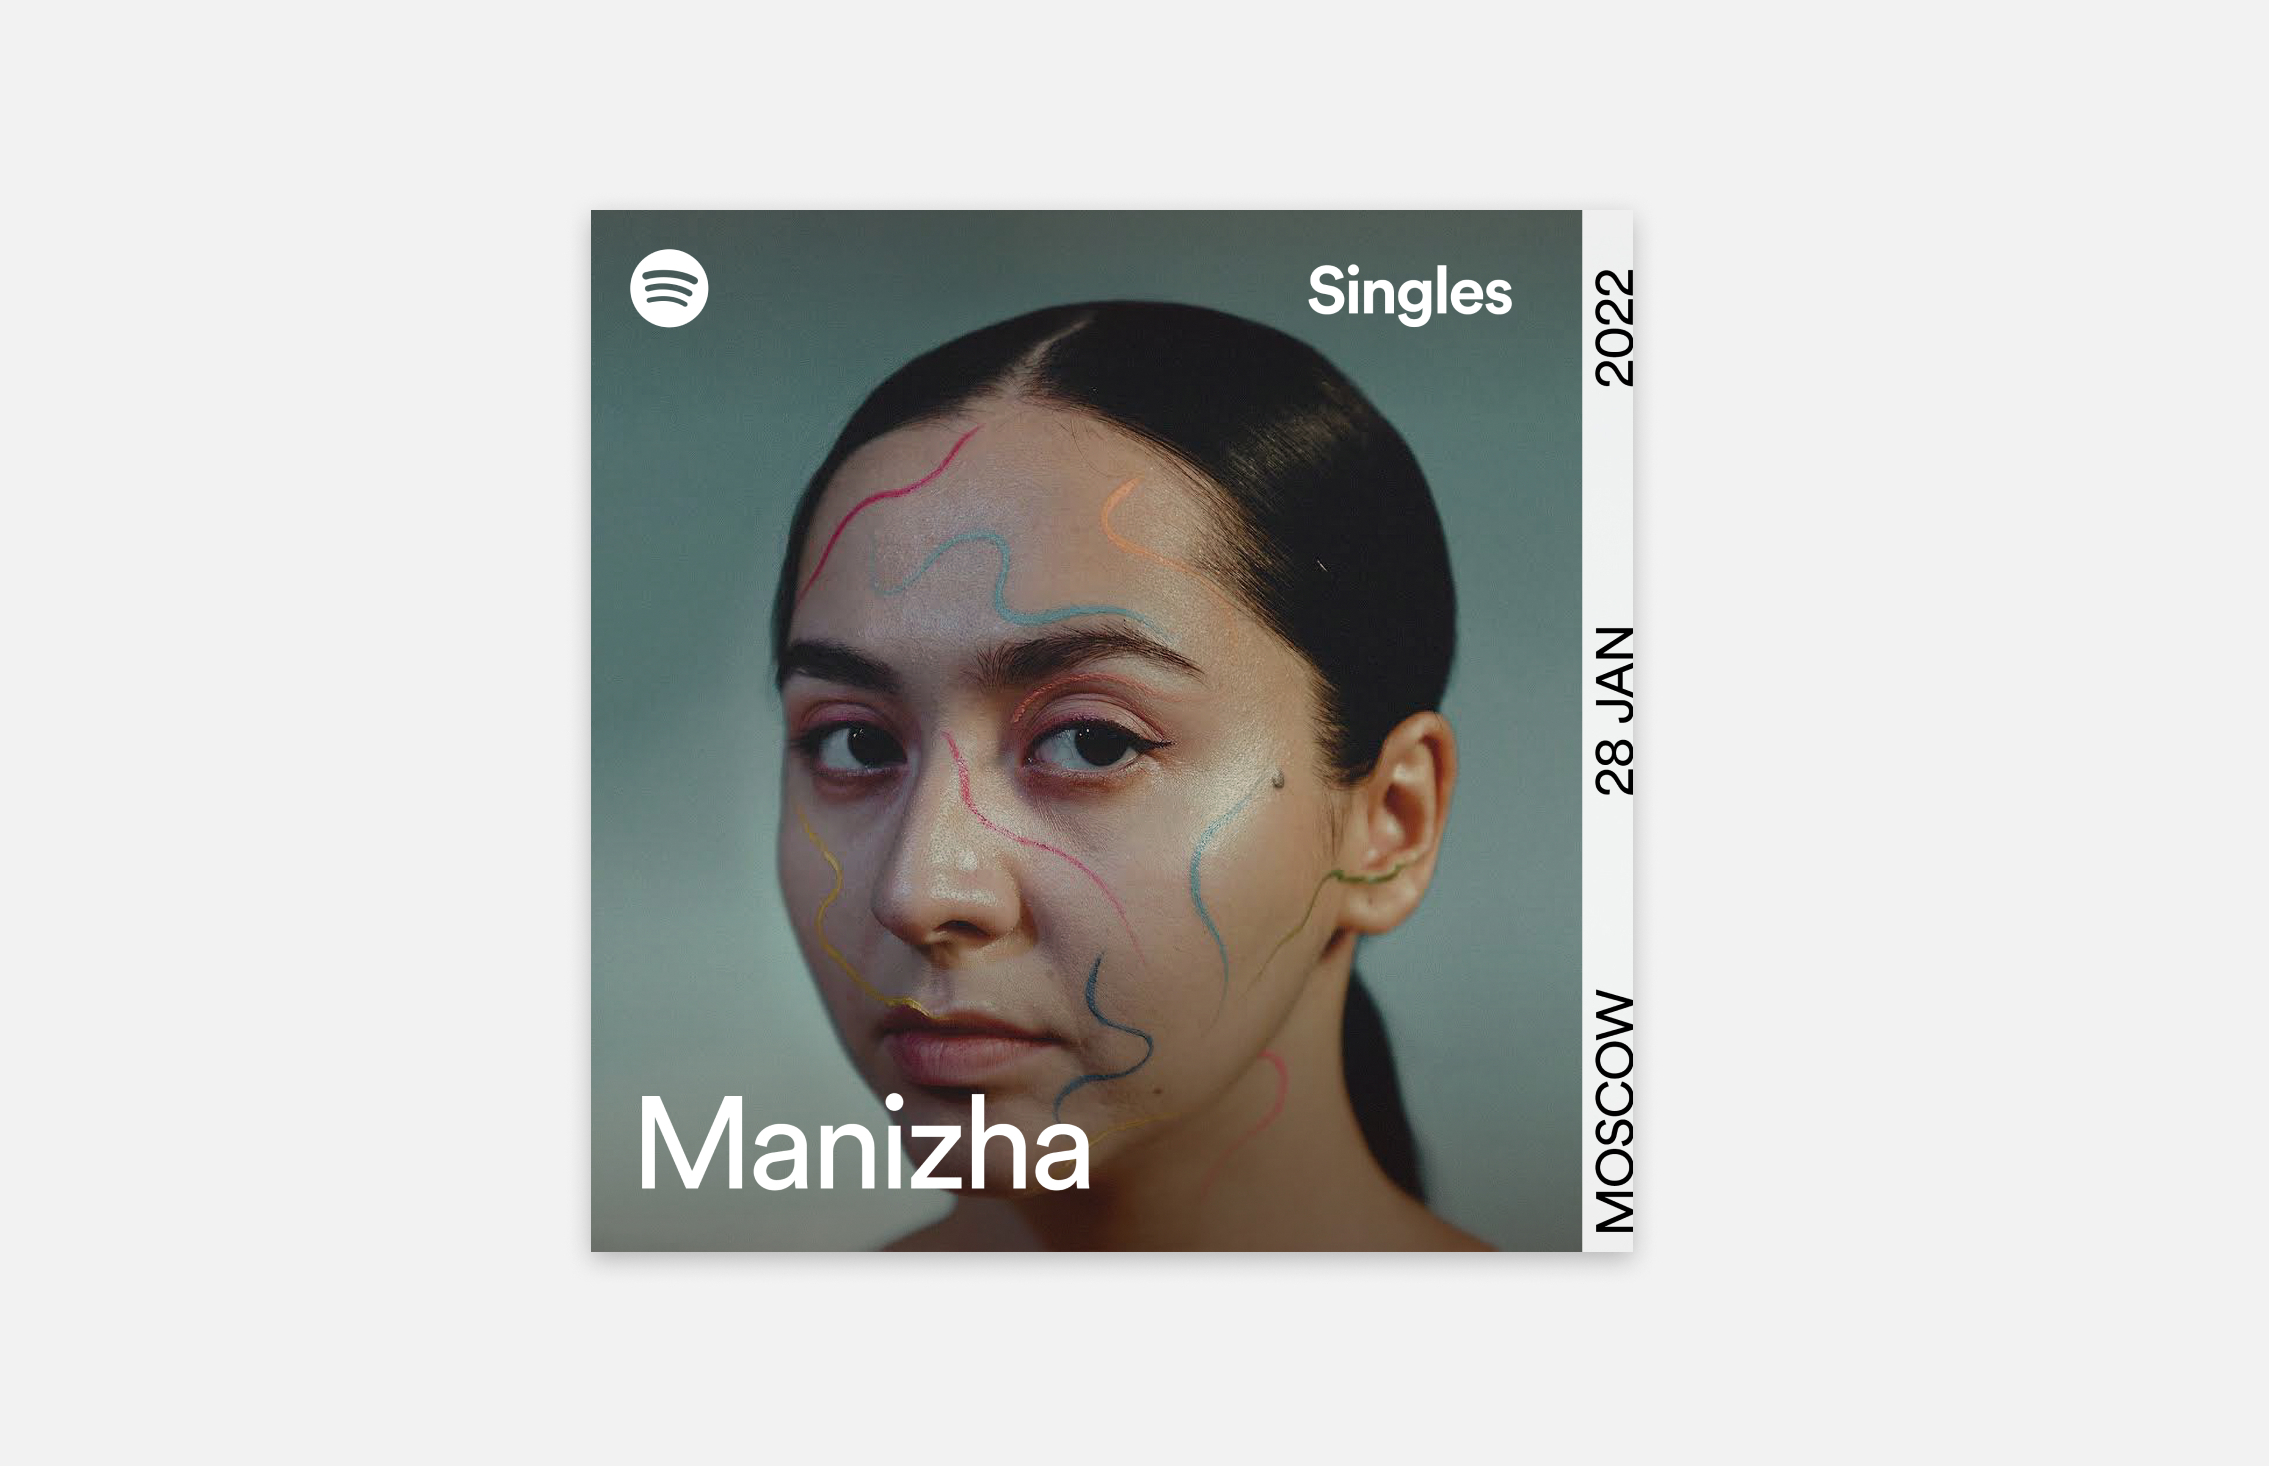 Манижа первой из российских певиц записала трек для Spotify Singles